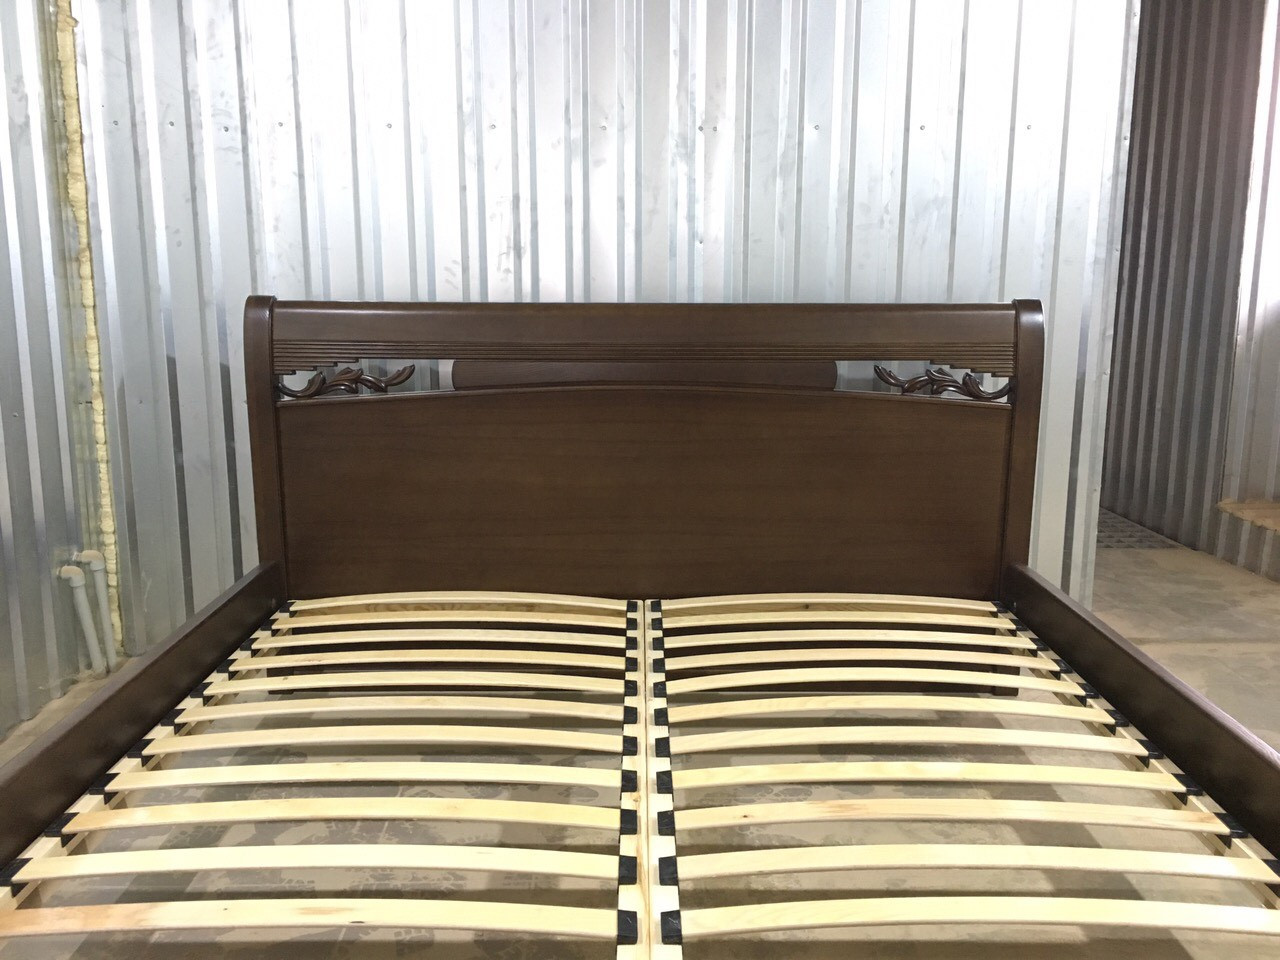 Кровать деревянная GNM- Шопен